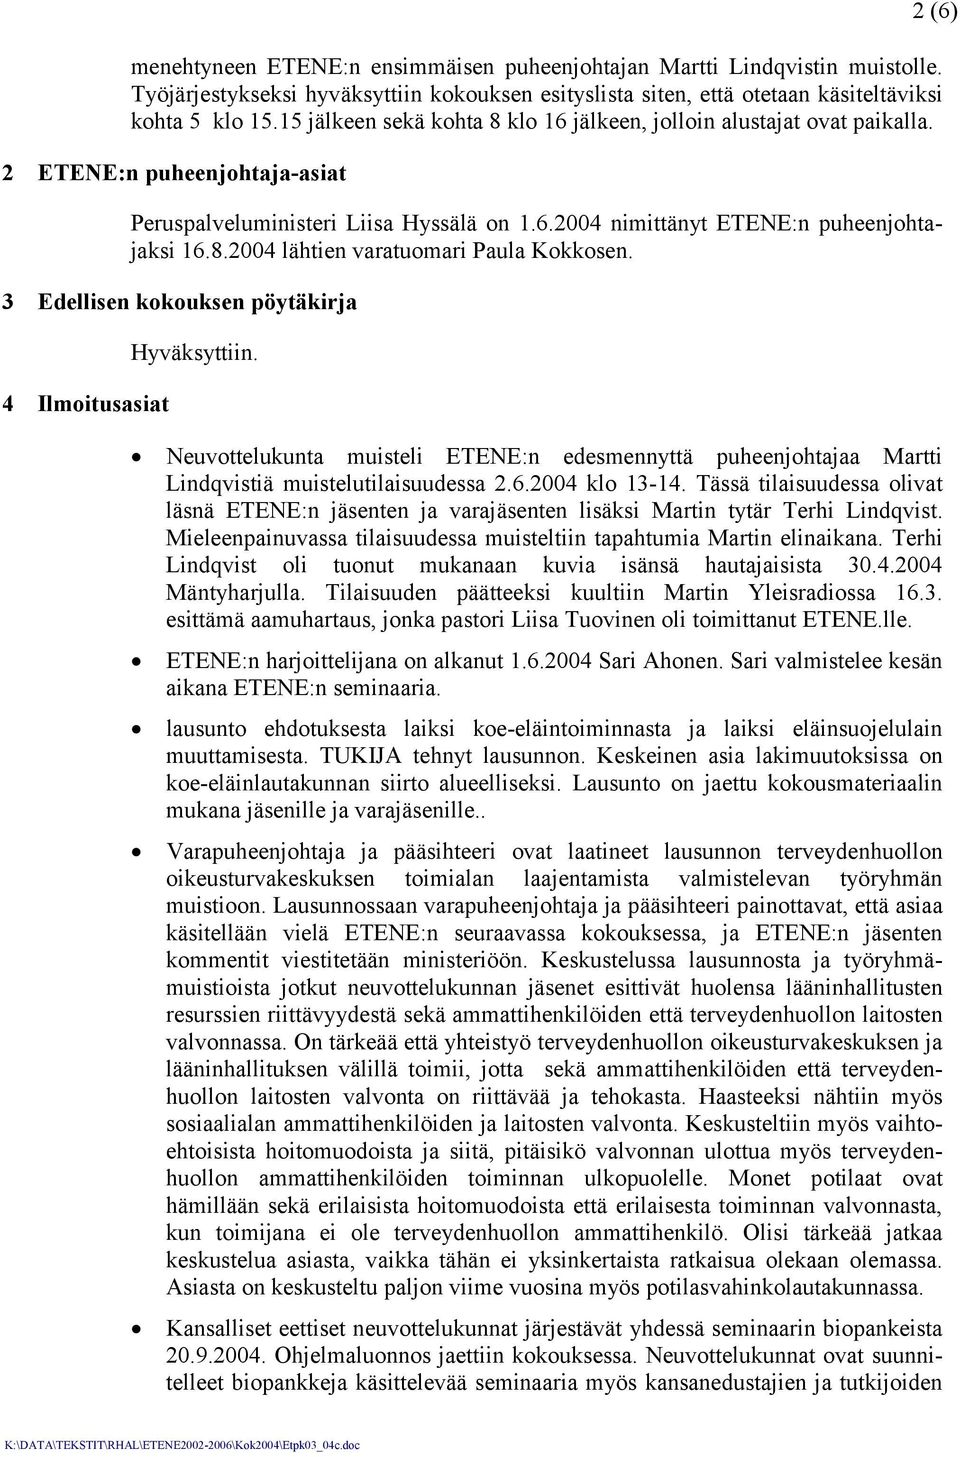 3 Edellisen kokouksen pöytäkirja 4 Ilmoitusasiat Hyväksyttiin. 2 (6) Neuvottelukunta muisteli ETENE:n edesmennyttä puheenjohtajaa Martti Lindqvistiä muistelutilaisuudessa 2.6.2004 klo 13-14.